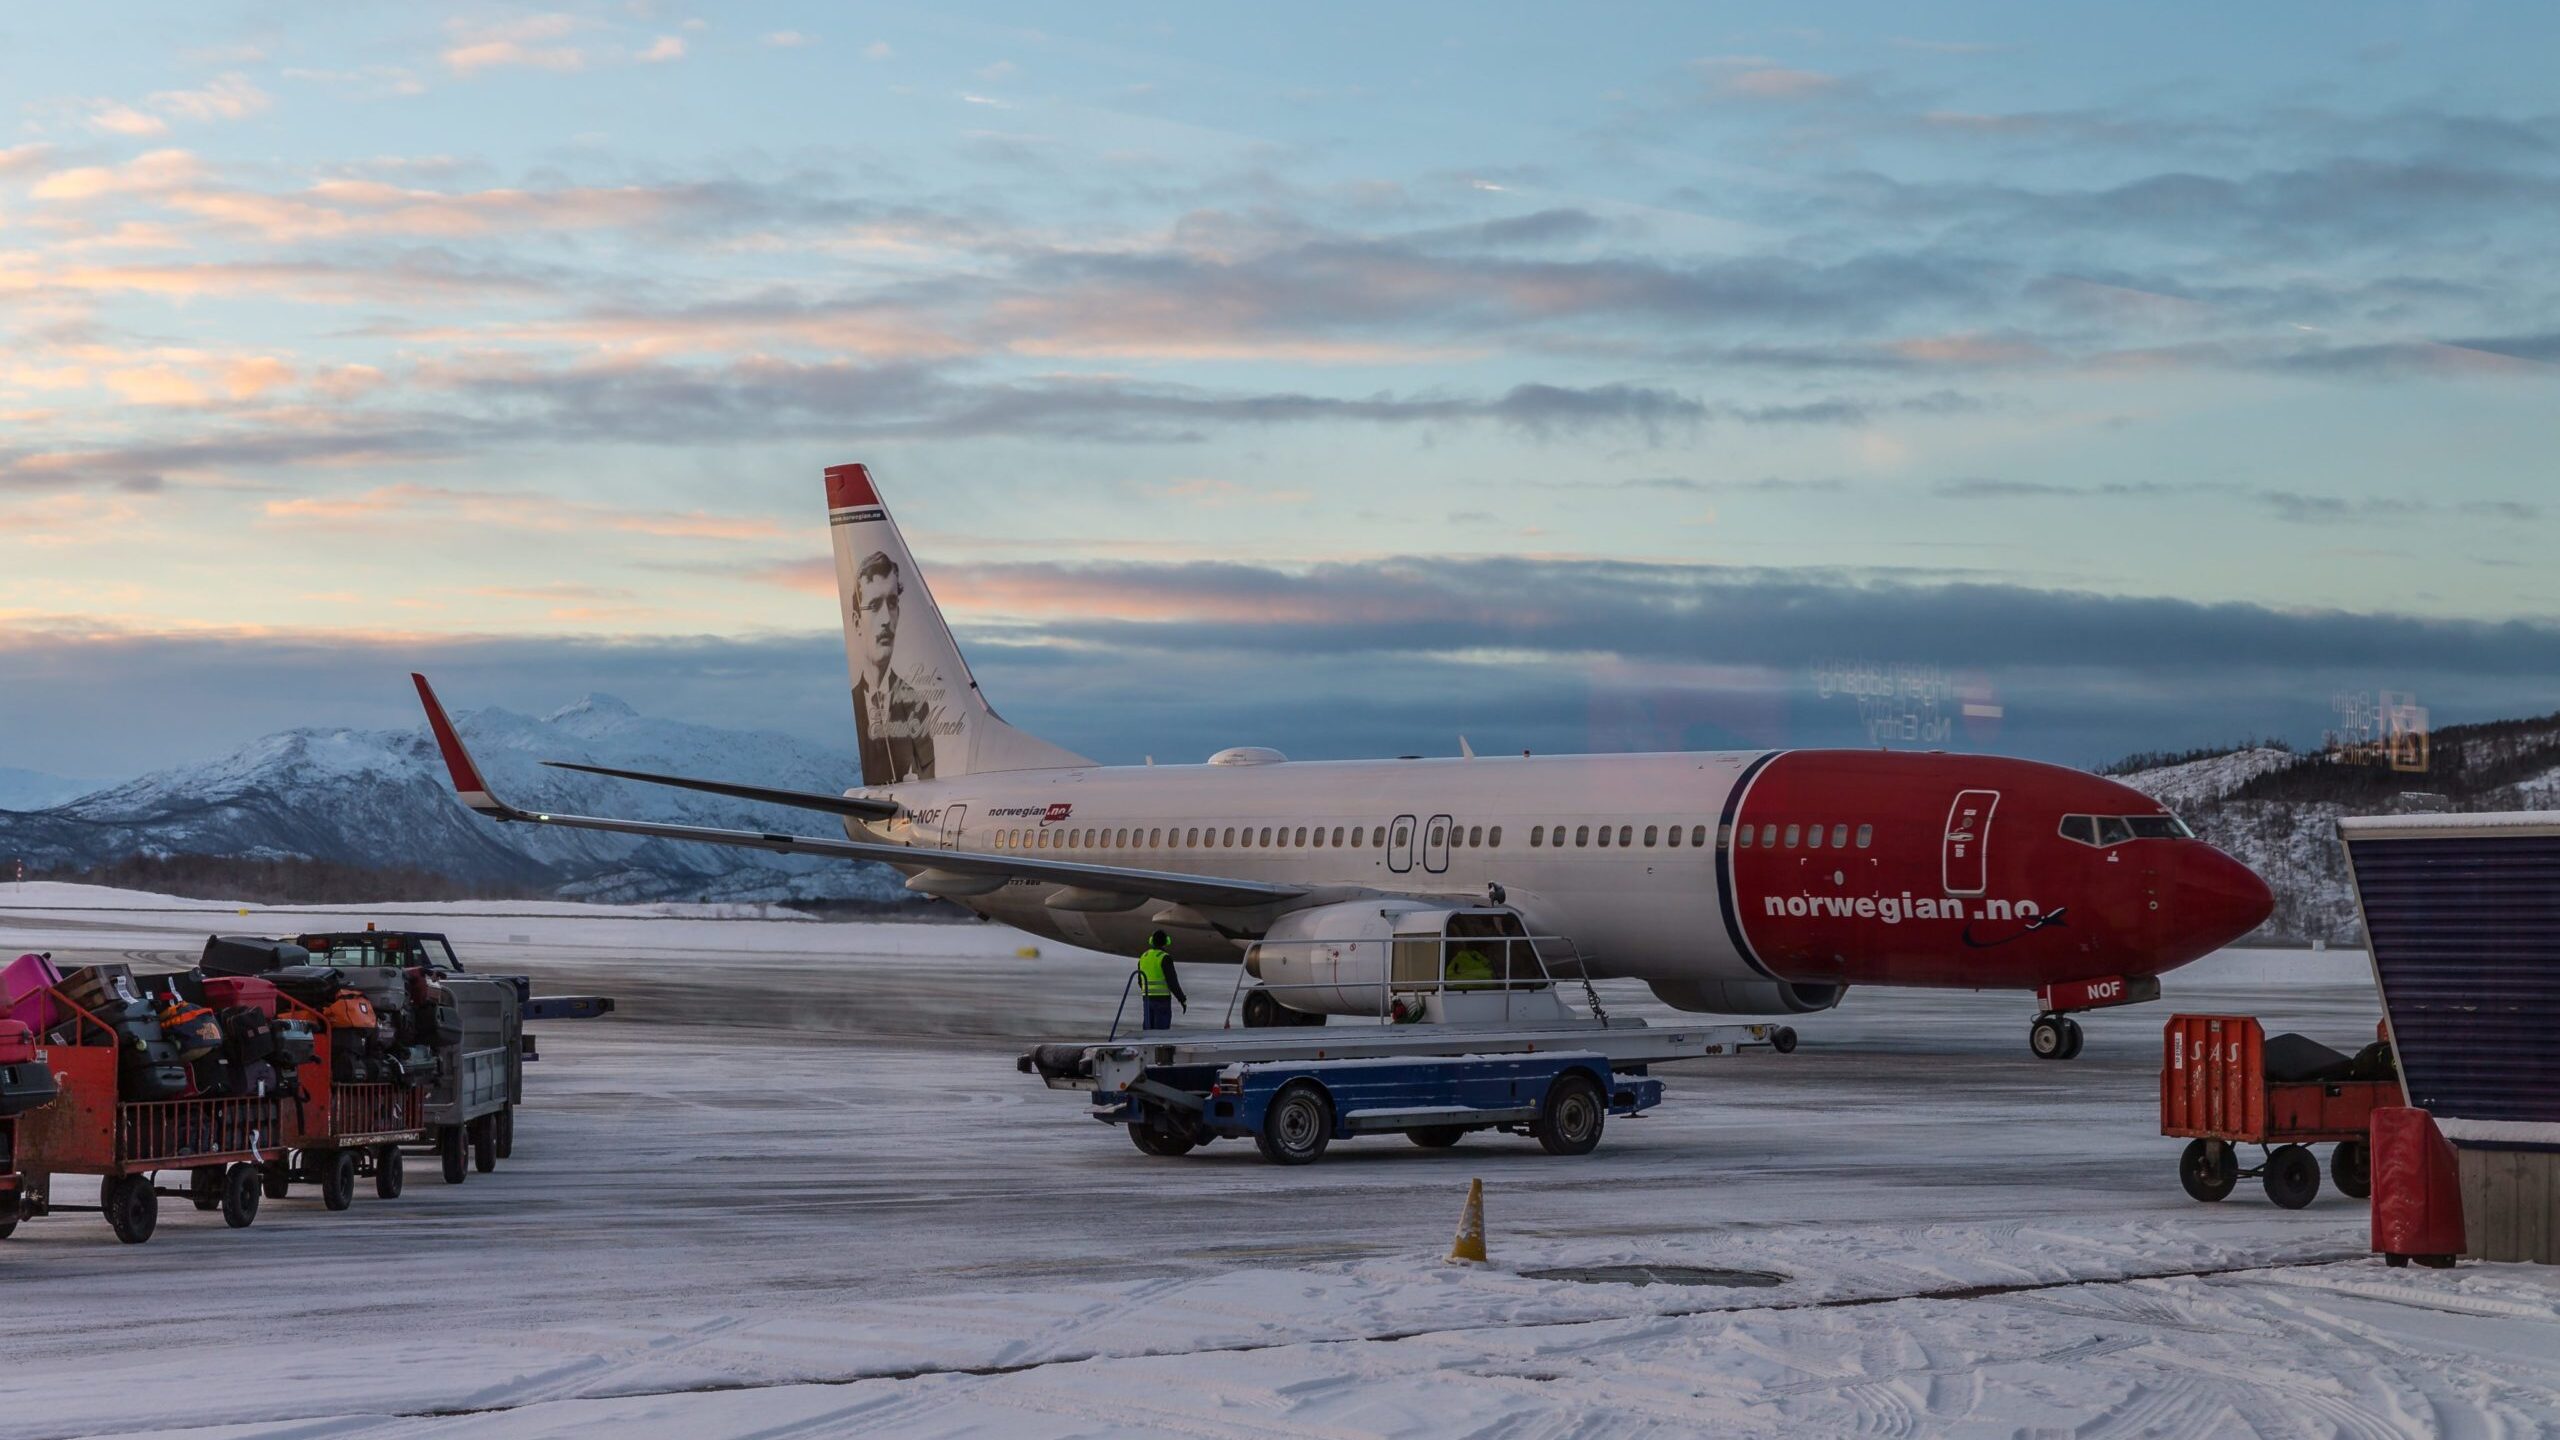 Die Maschine der Norwegian Air wird hier auf dem Flugplatz von Harstad gezeigt > Anreise nach Norwegen